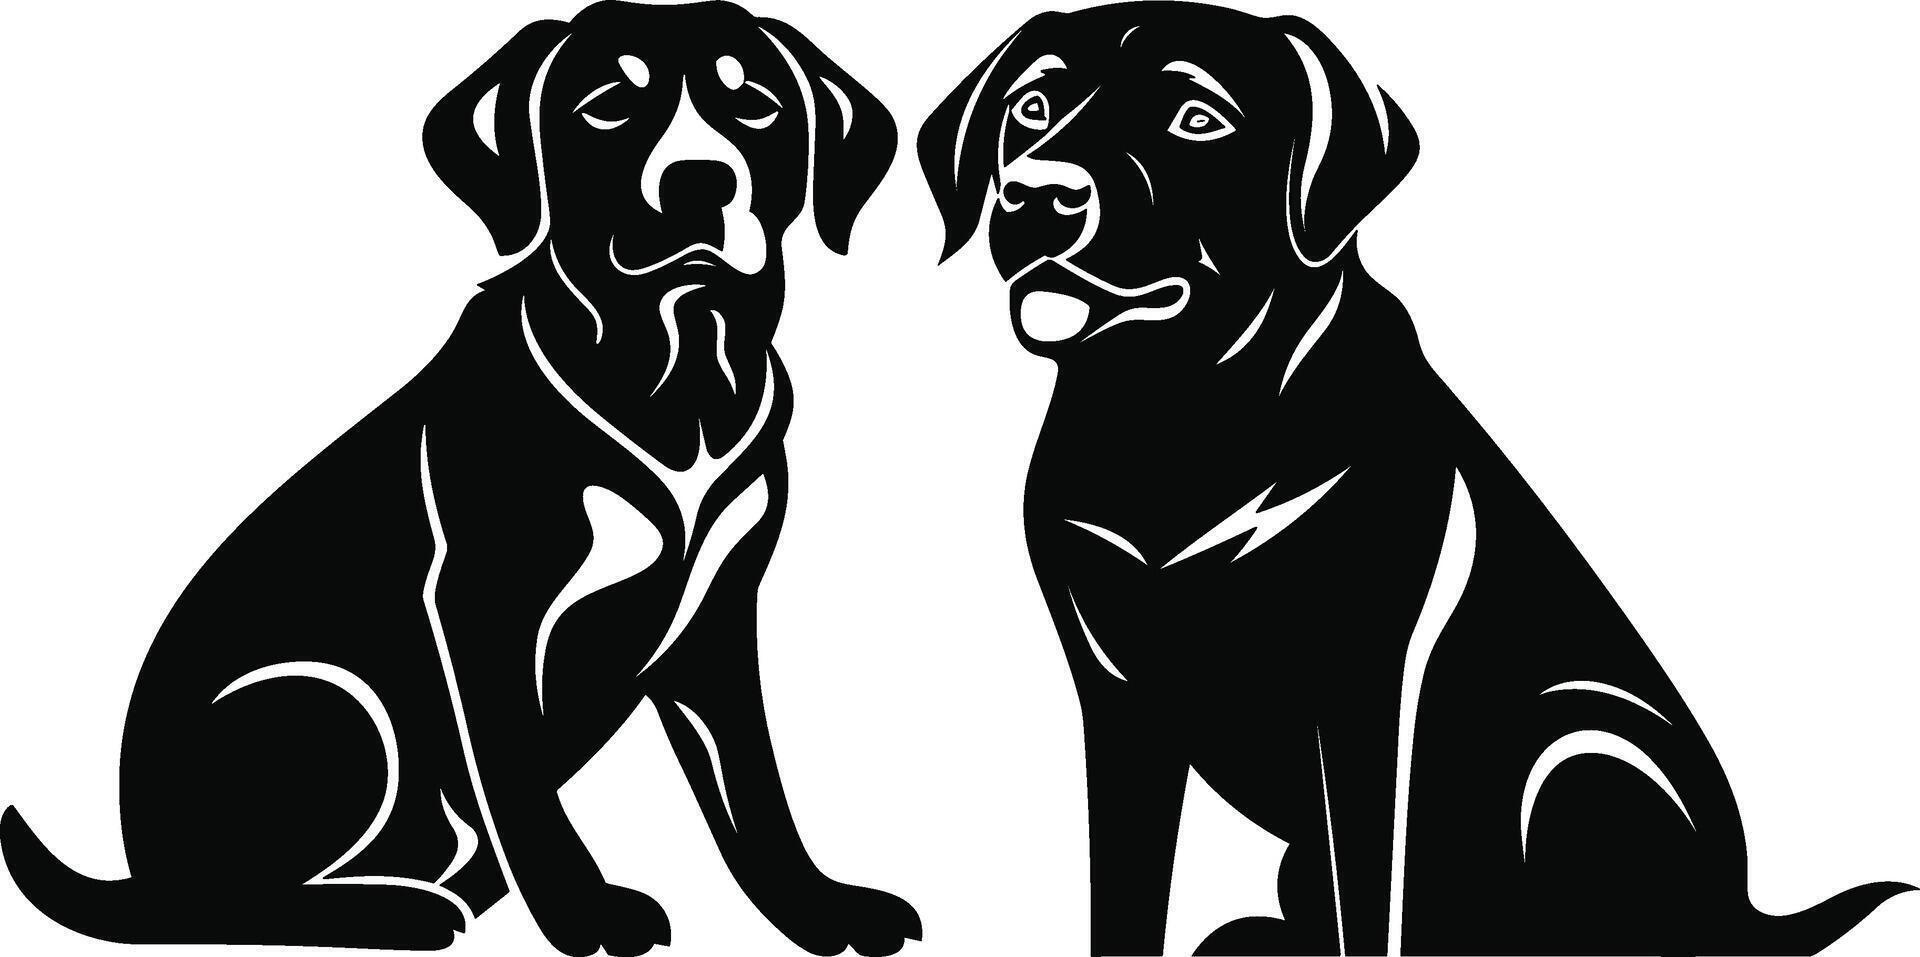 Silhouette labrador retriever dog logo vector